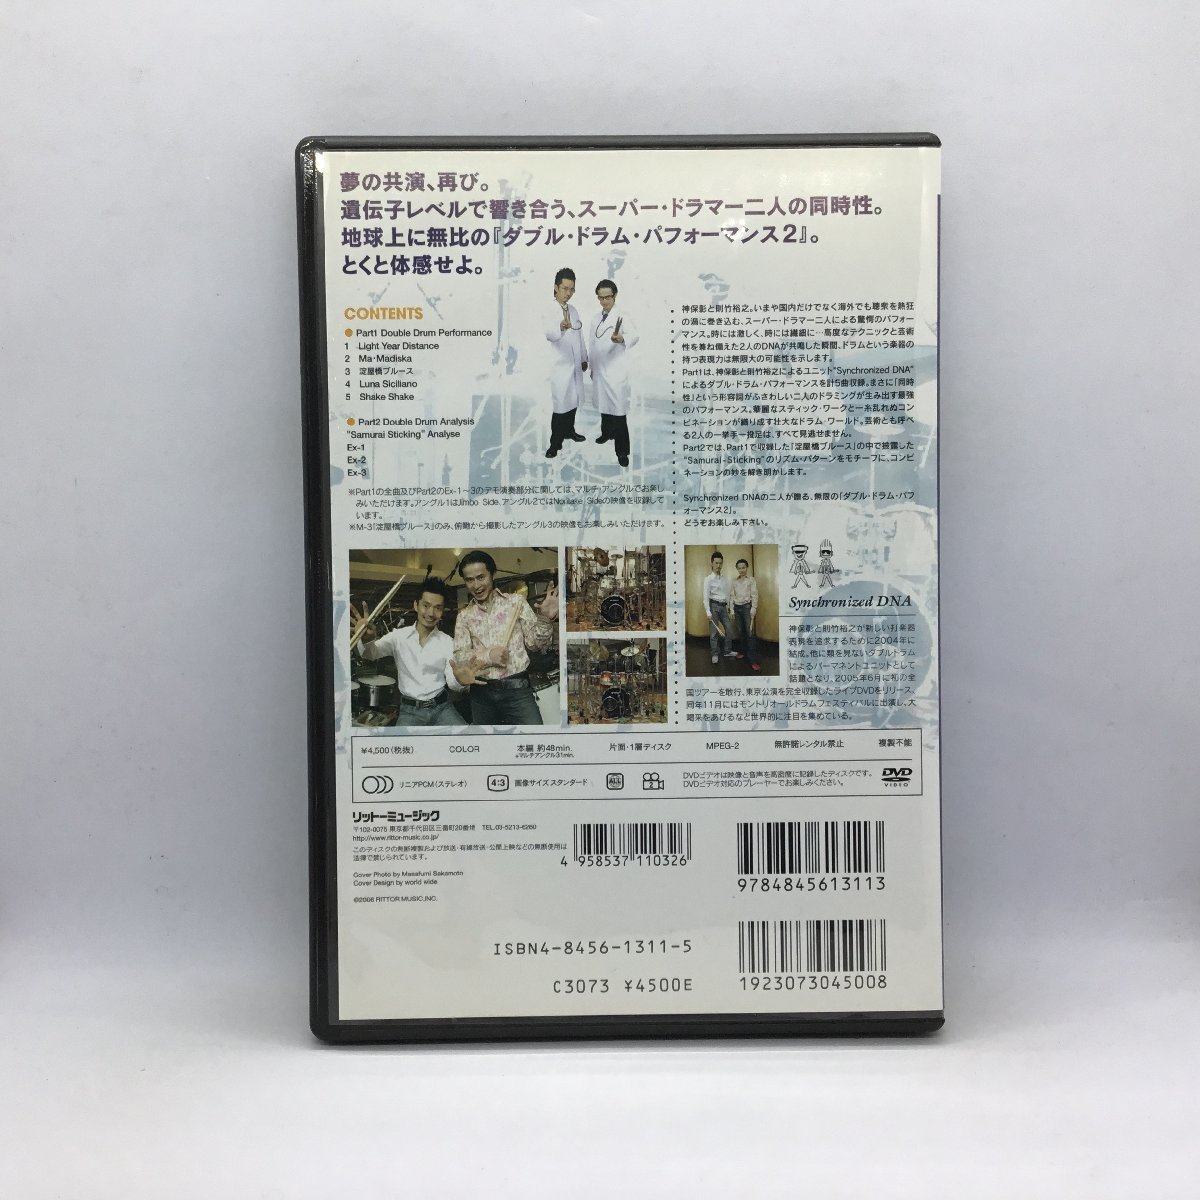 神保彰&則竹裕之/ダブル・ドラム・パフォーマンス2 Synchronized DNA (DVD) VWD-295_画像2